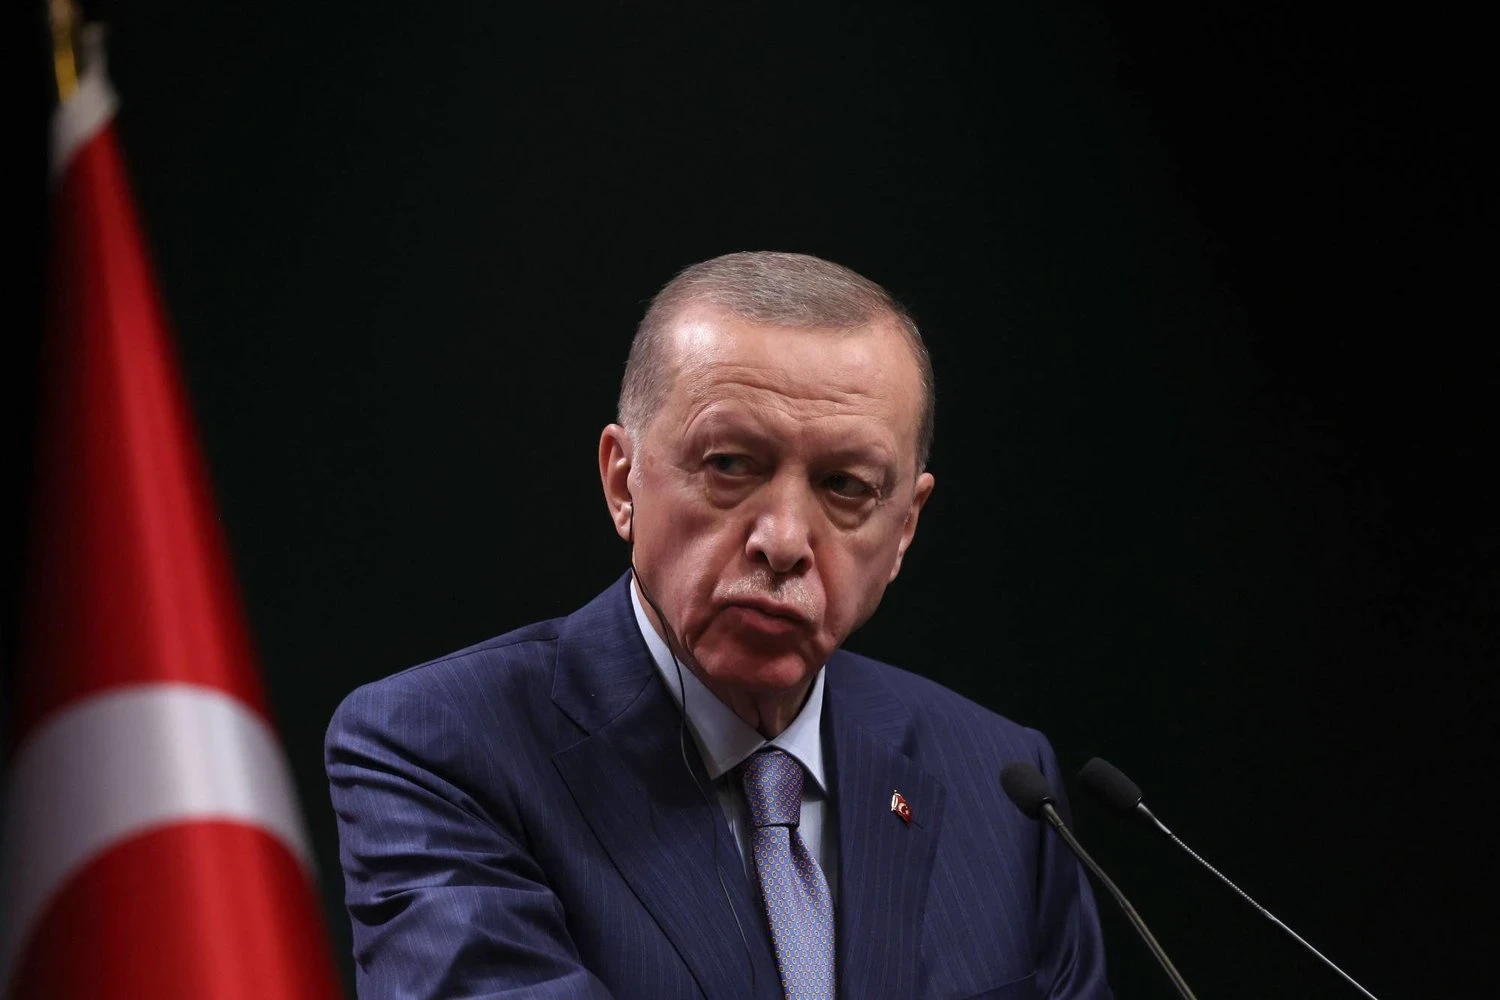 الرئيس التركي رجب طيب أوردغان